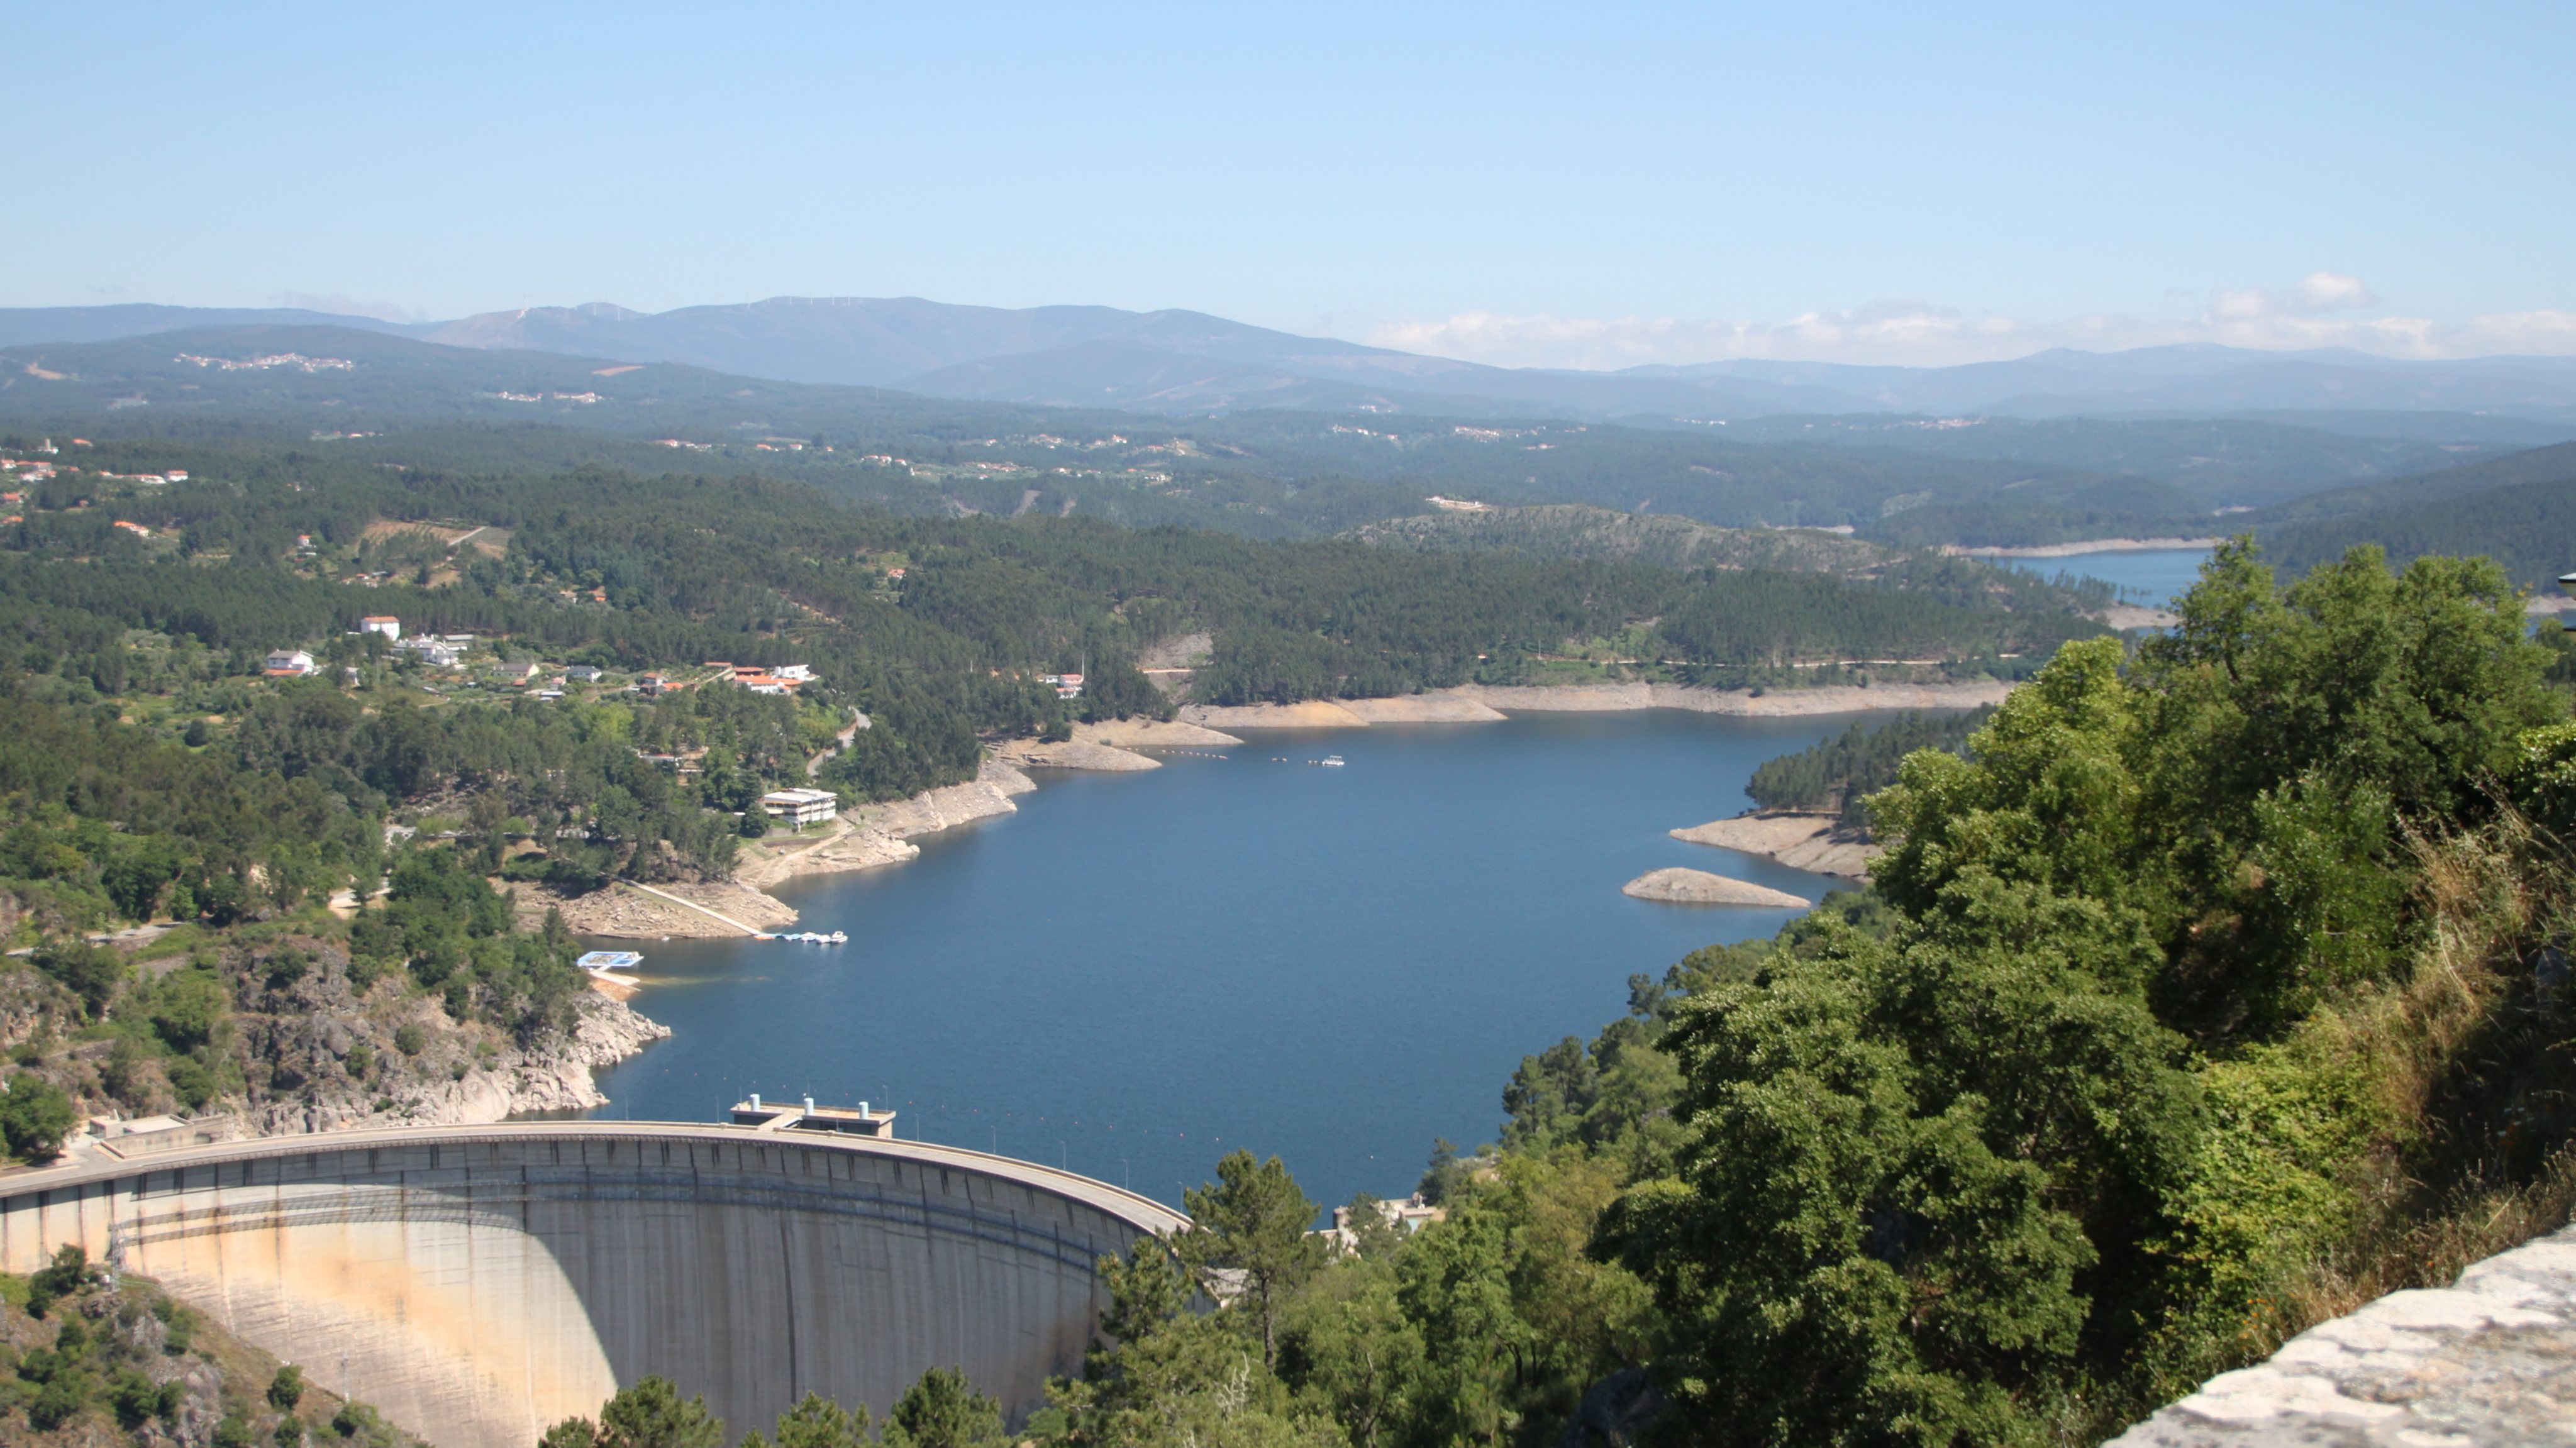 Numa nota de imprensa emitida na semana passada, a Voltalia informou ter conquistado o projeto de energia solar flutuante na barragem do Cabril